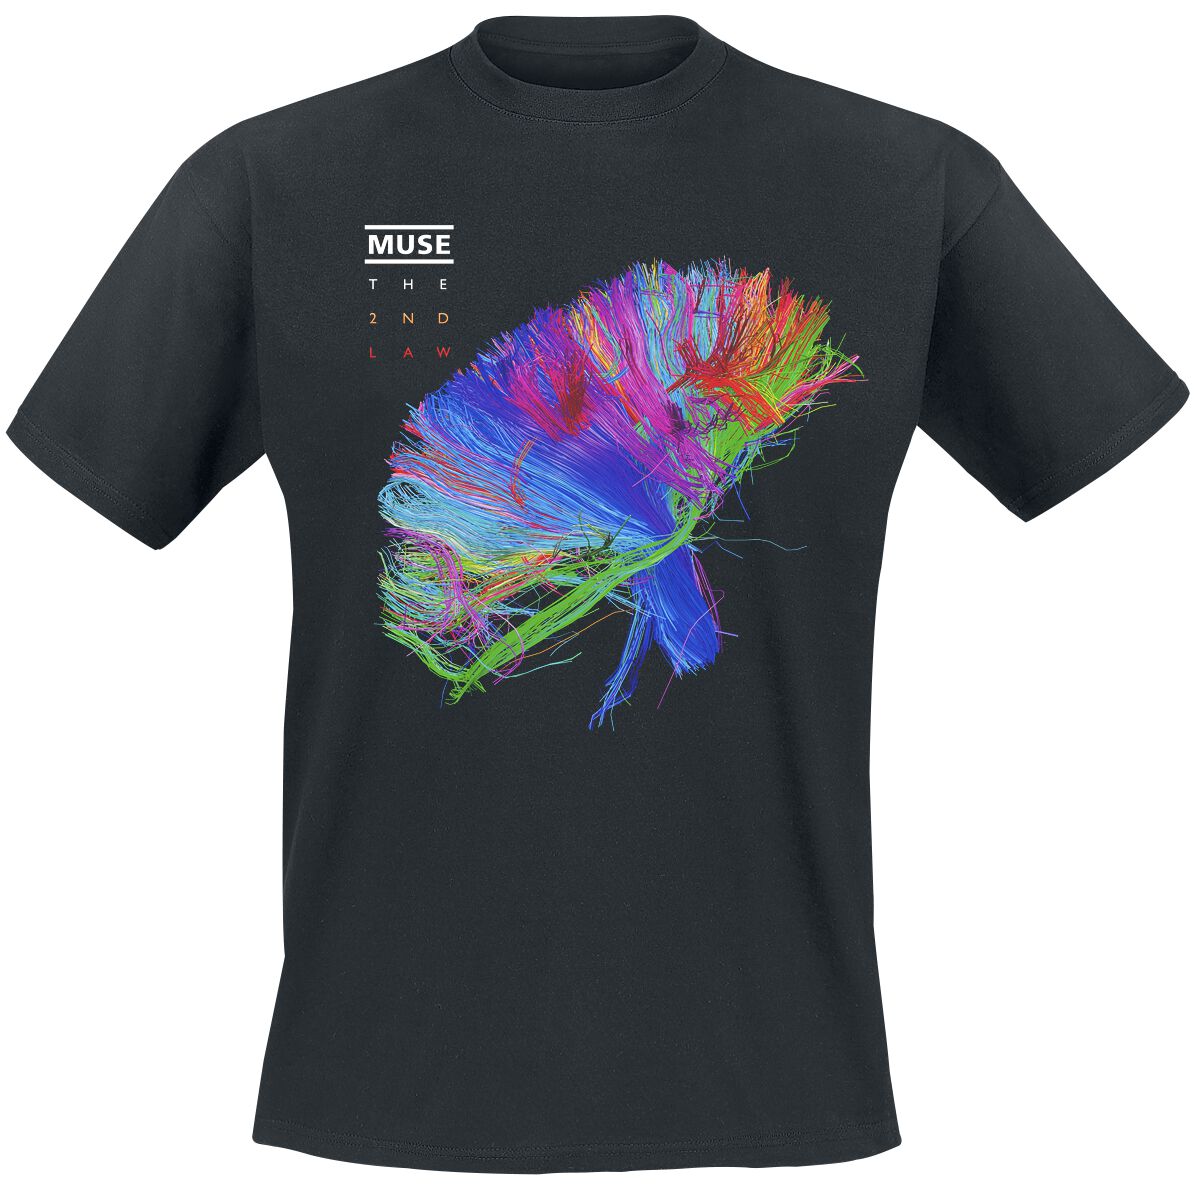 Muse T-Shirt - The 2nd Law Album - XL bis XXL - für Männer - Größe XL - schwarz  - Lizenziertes Merchandise!